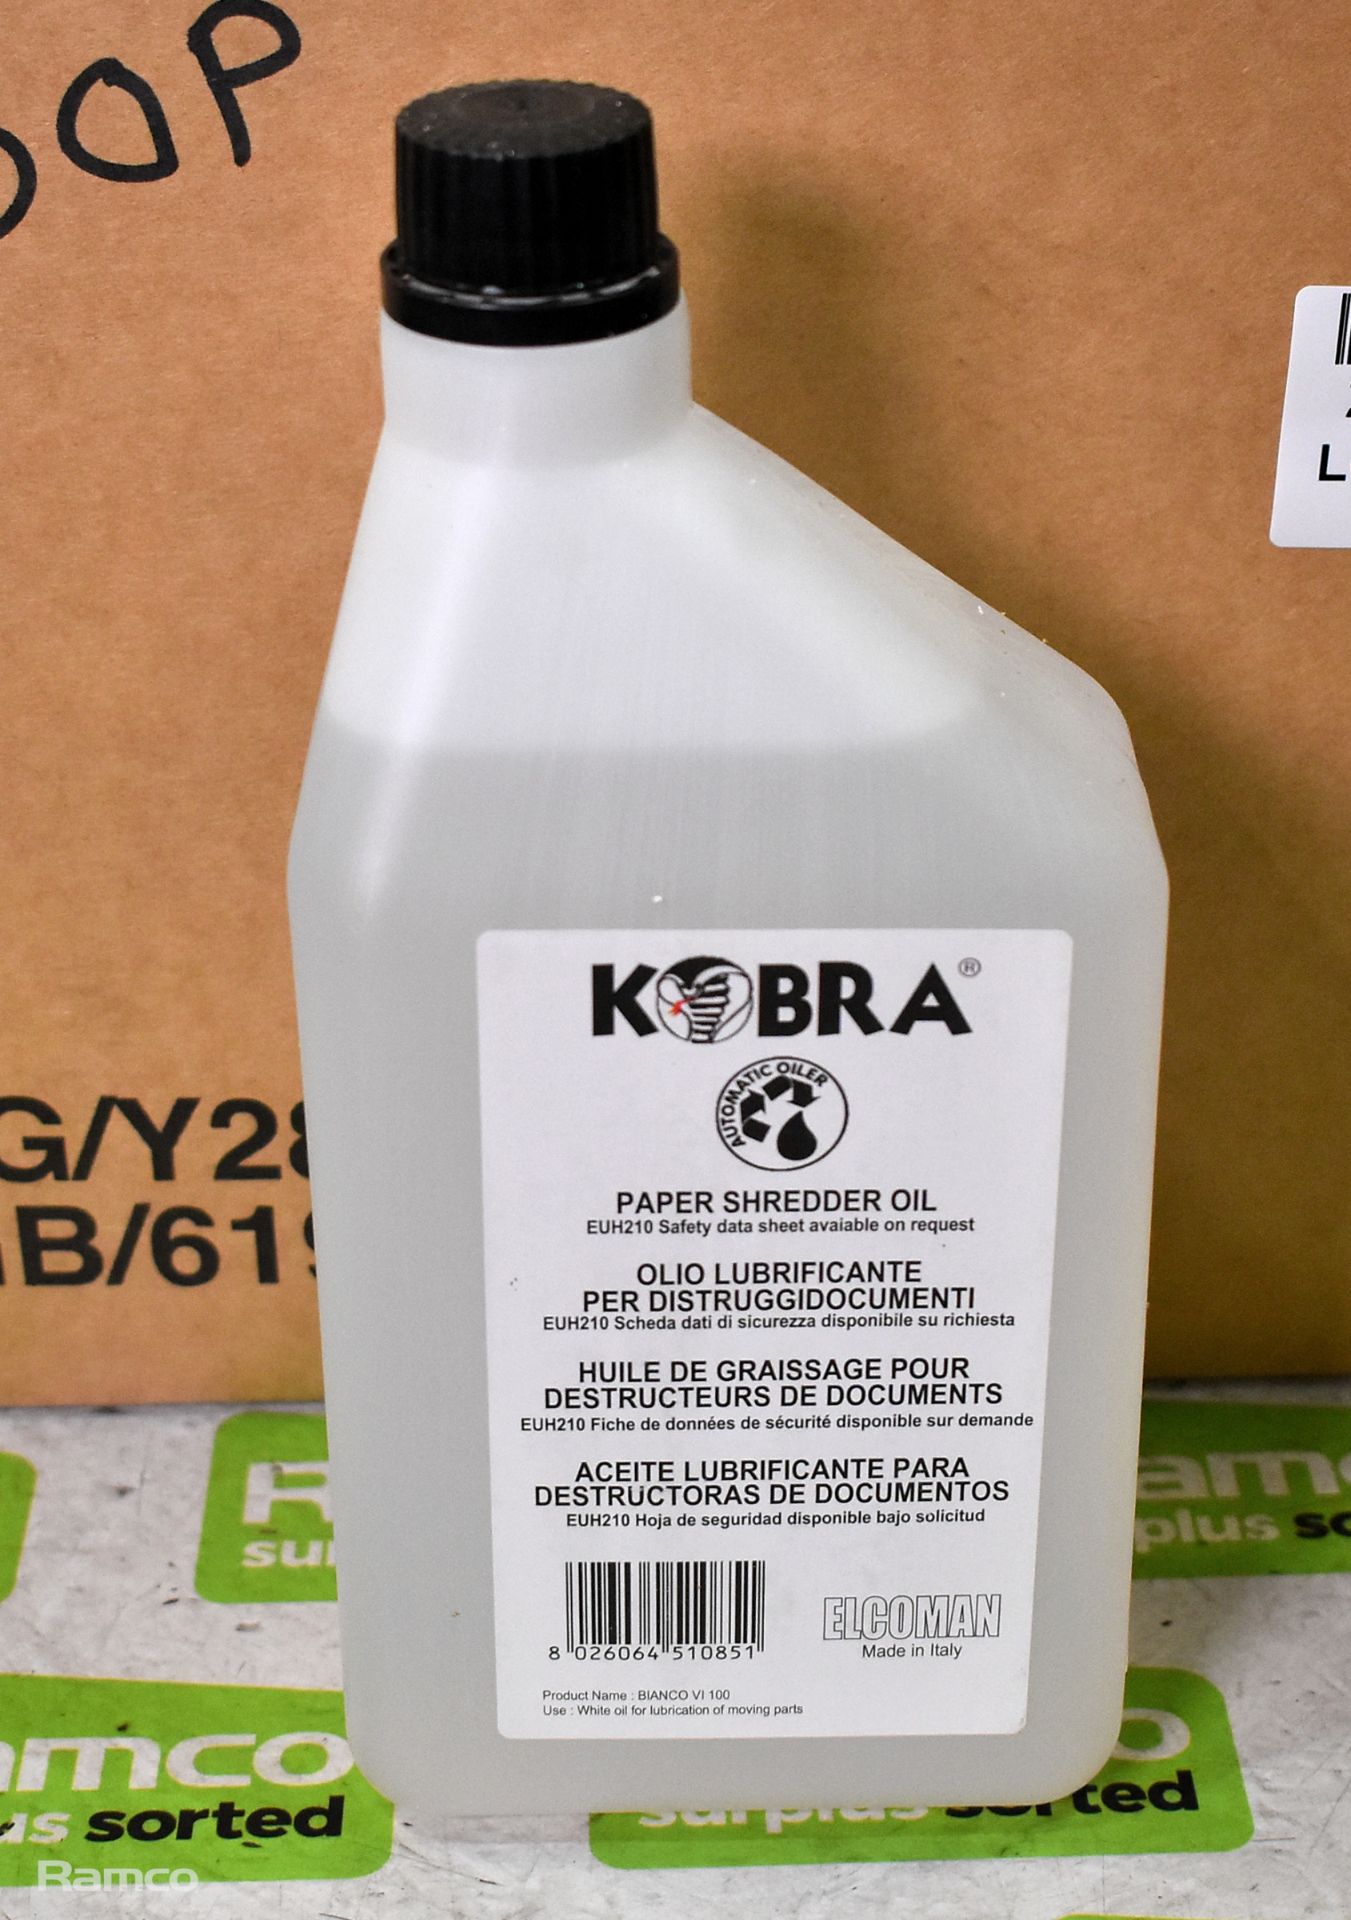 10x bottles of Kobra Bianco V1 100 1L paper shredder oil - Bild 2 aus 2